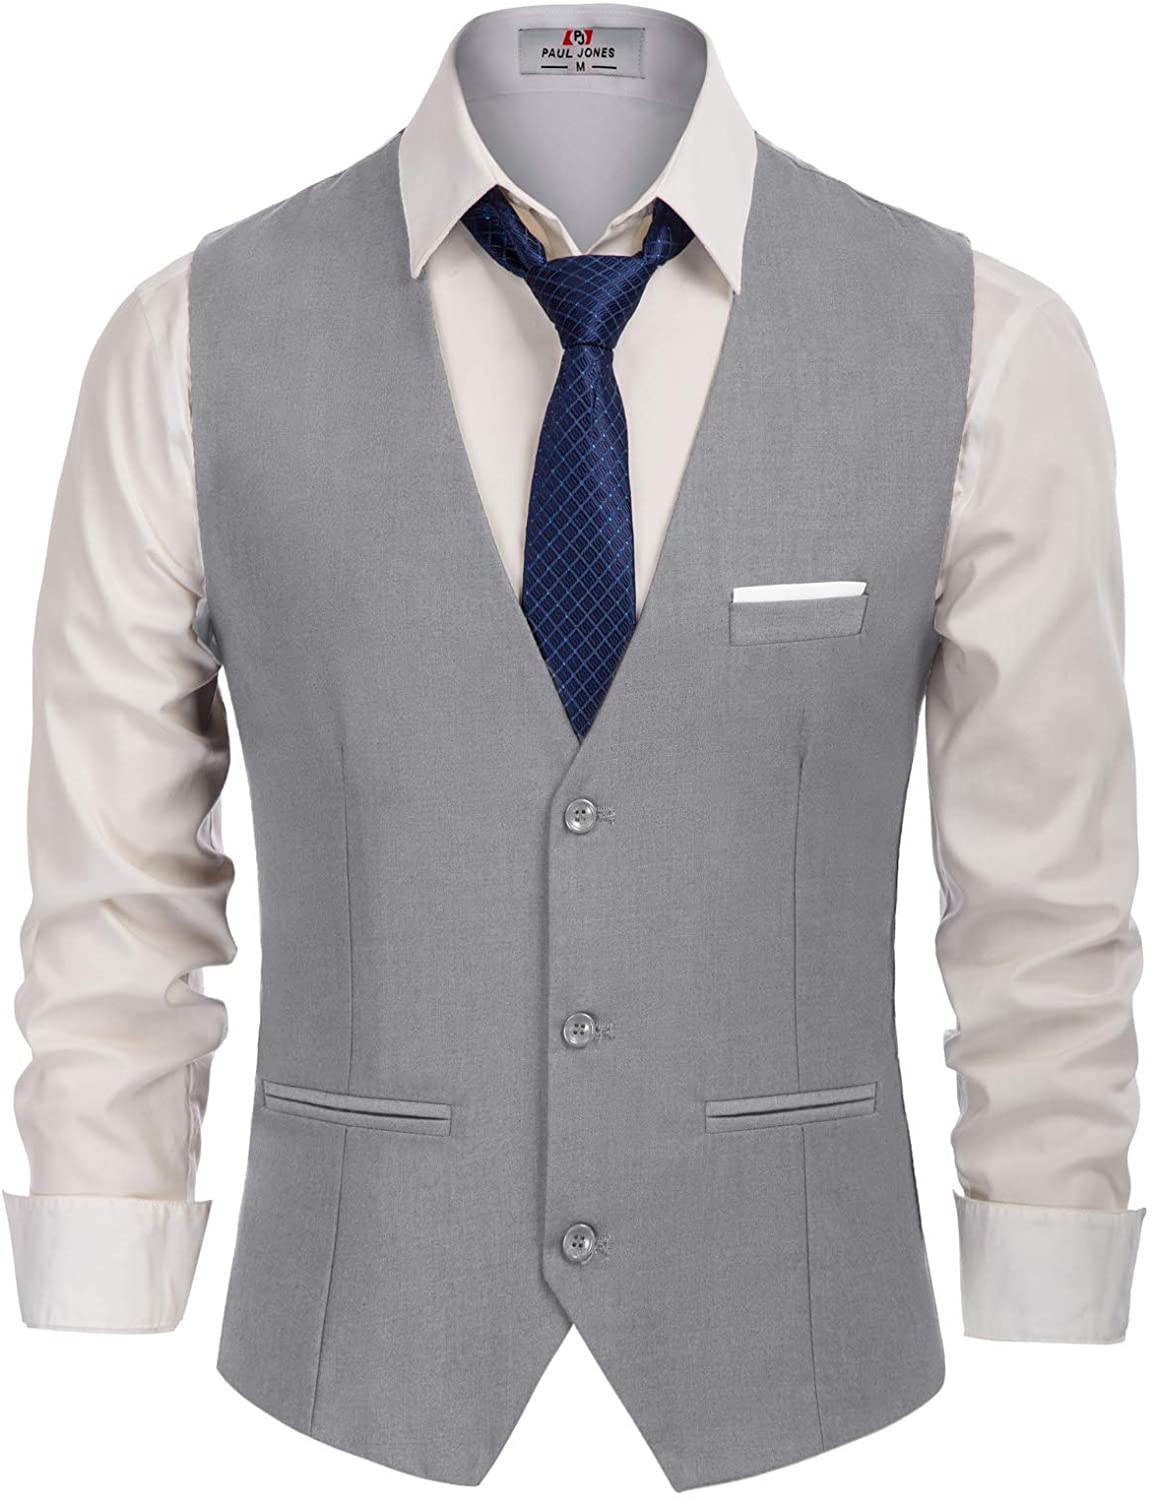 PJ PAUL JONES Men's Slim Fit Business Dress Suit Vests 3 Button Formal Waistcoat 